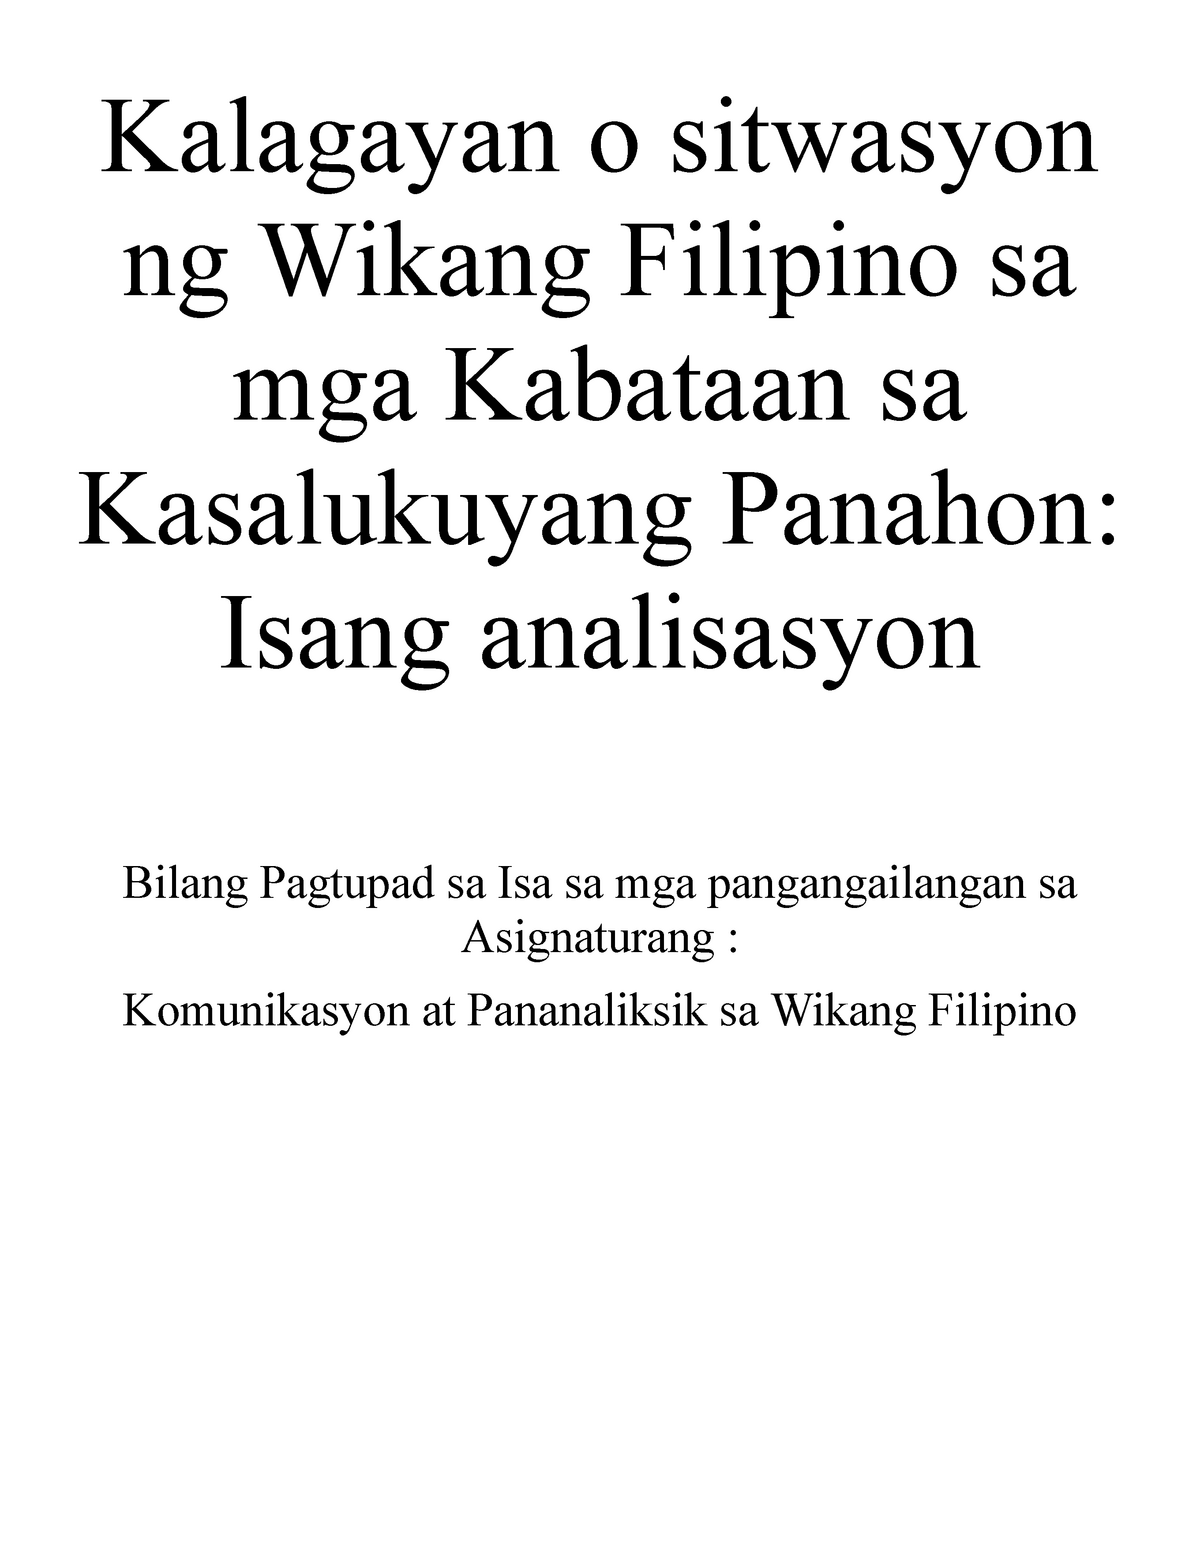 46+ Kalagayan ng wikang filipino sa kasalukuyang panahon ideas in 2021